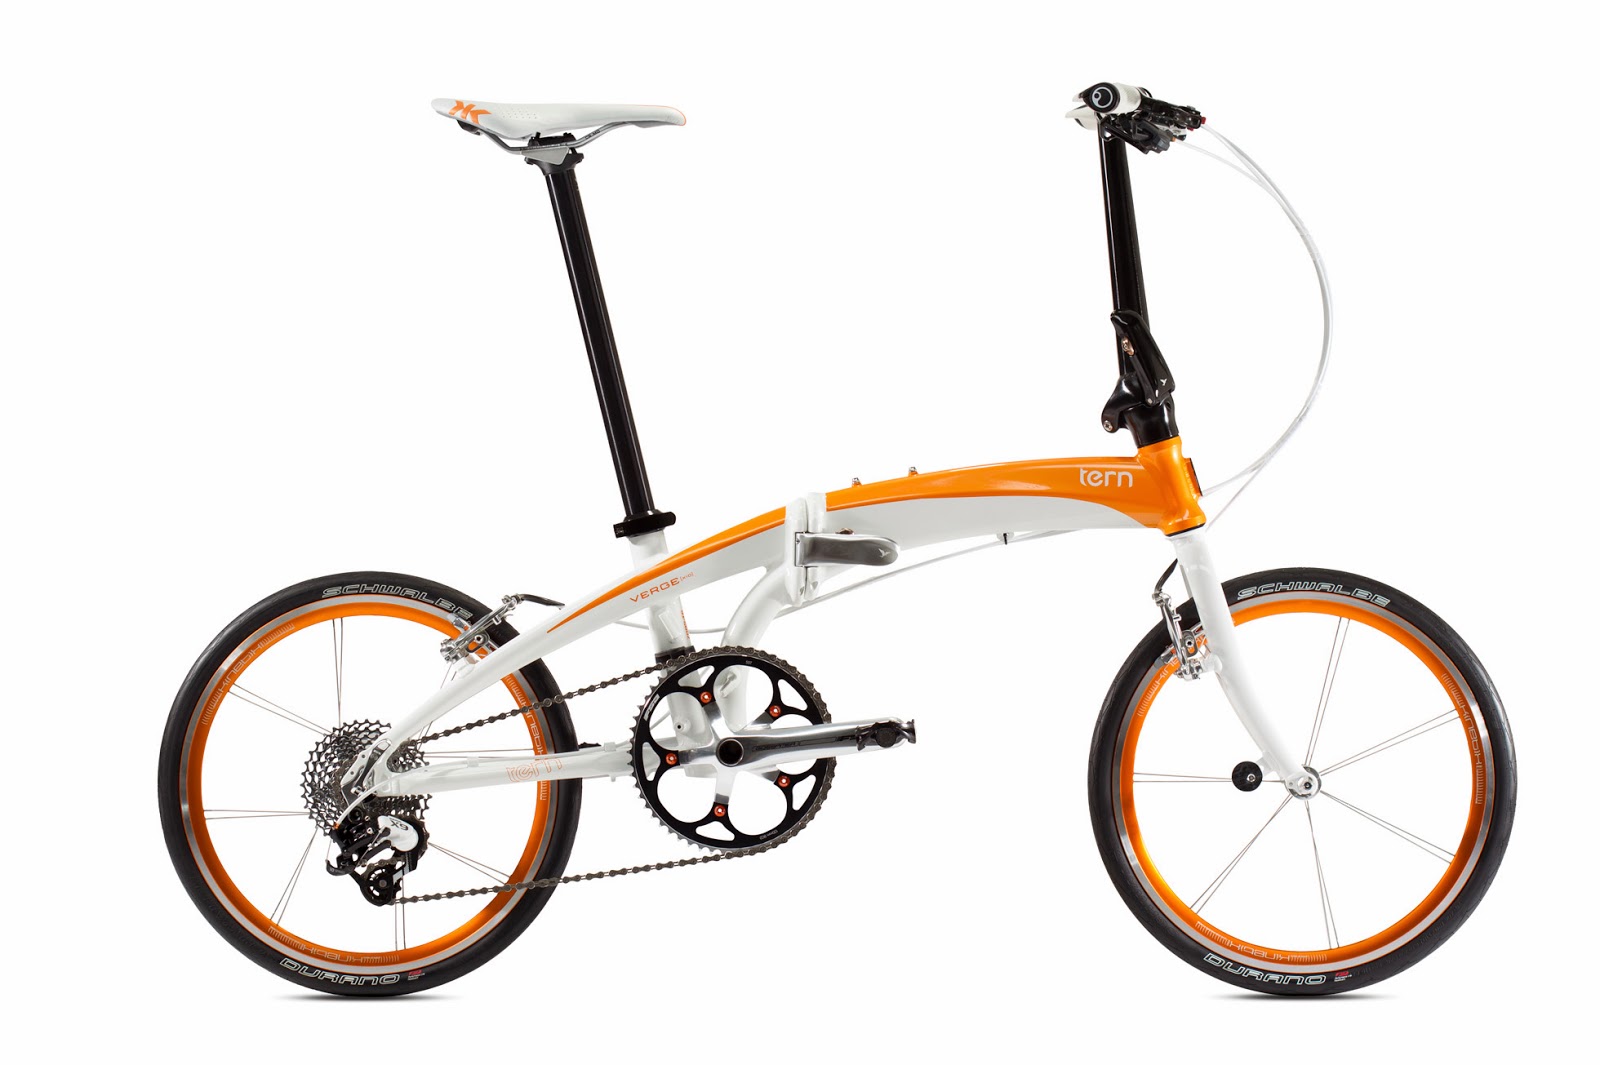 tesco electric bike